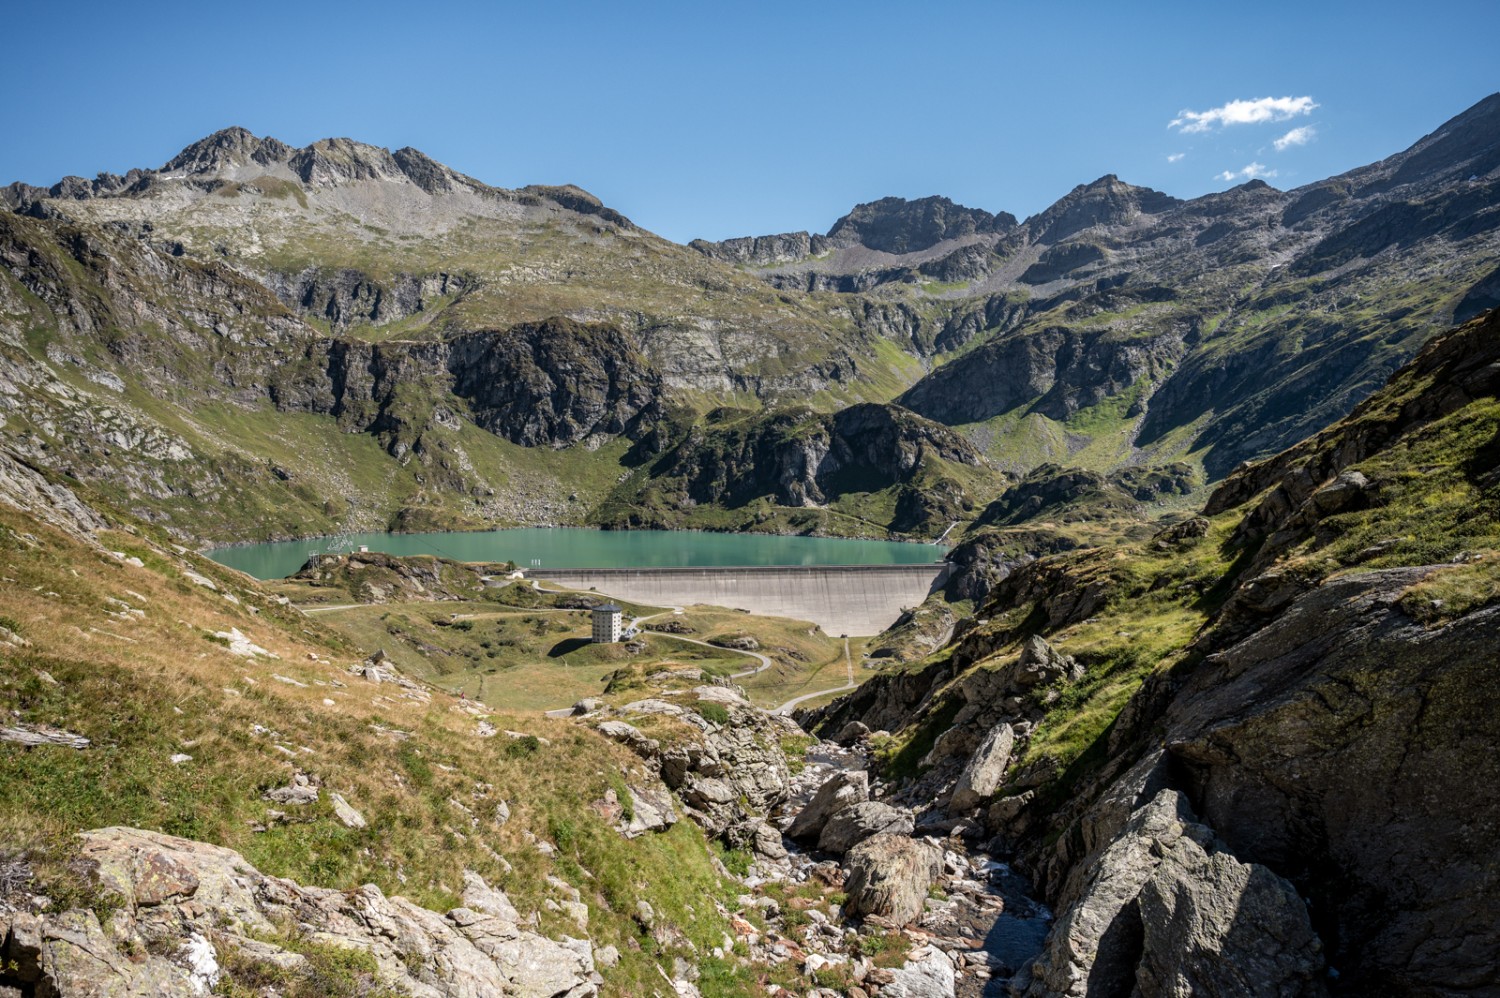 Blick zurück auf den Lago di Robièi, der Startpunkt der Wanderung. Bild: Jon Guler